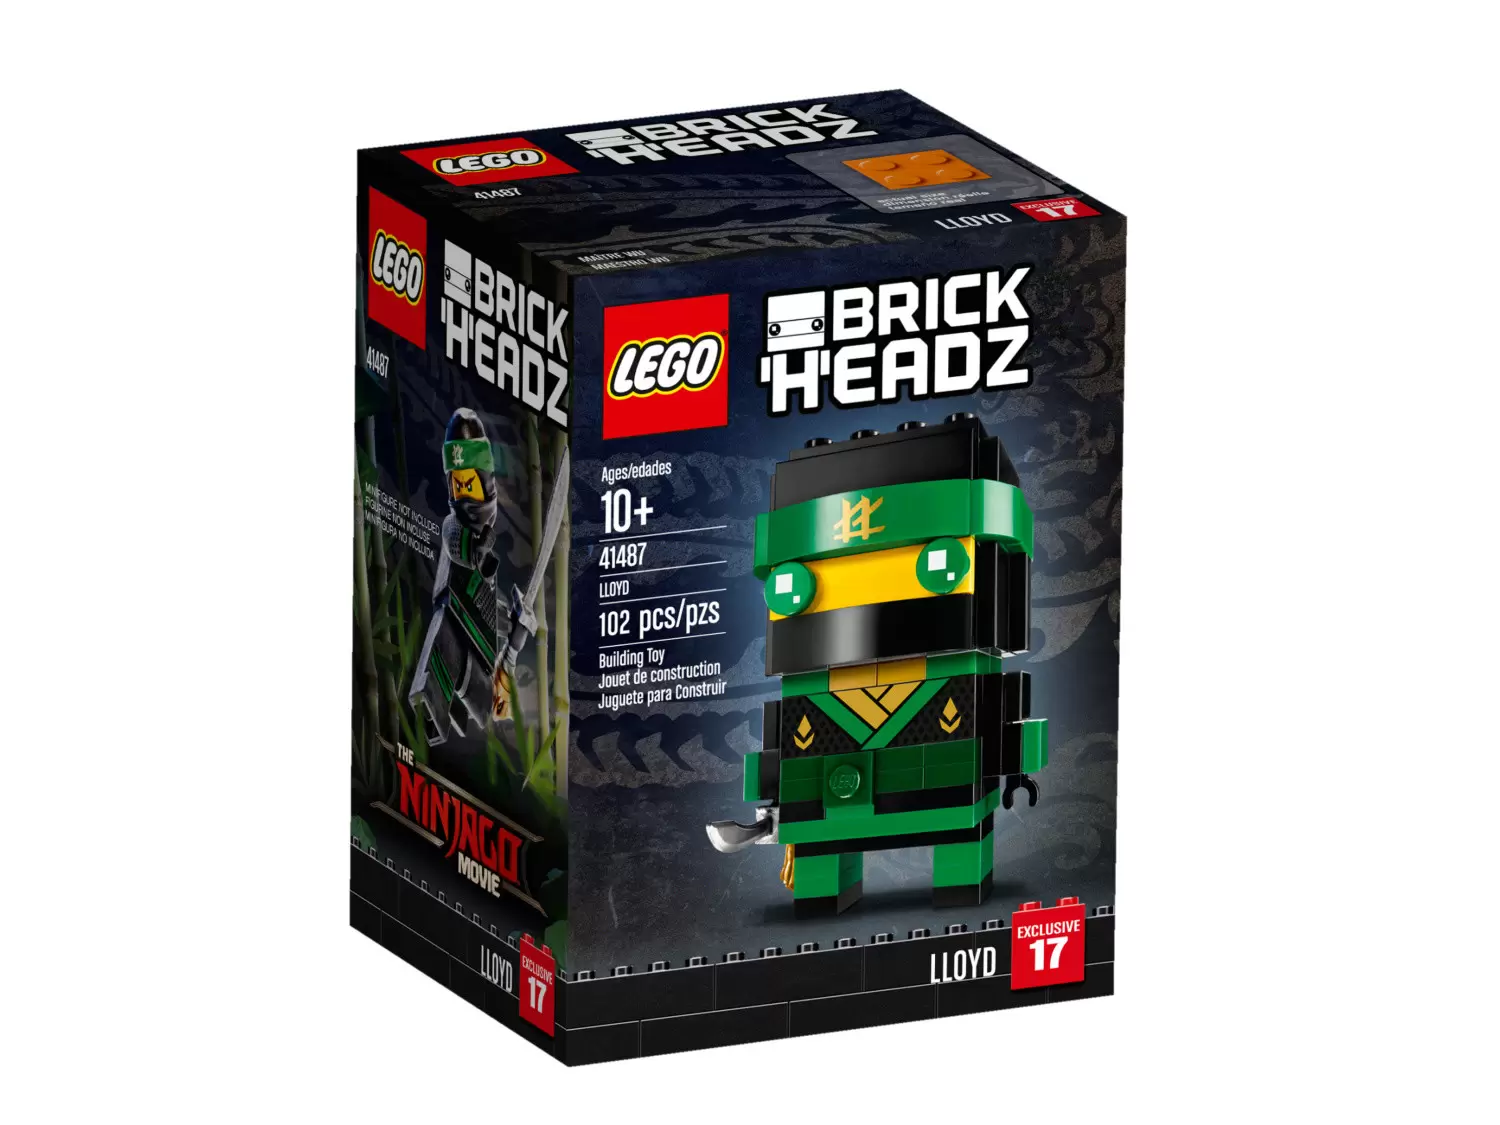 LEGO BrickHeadz - 17 - Lloyd